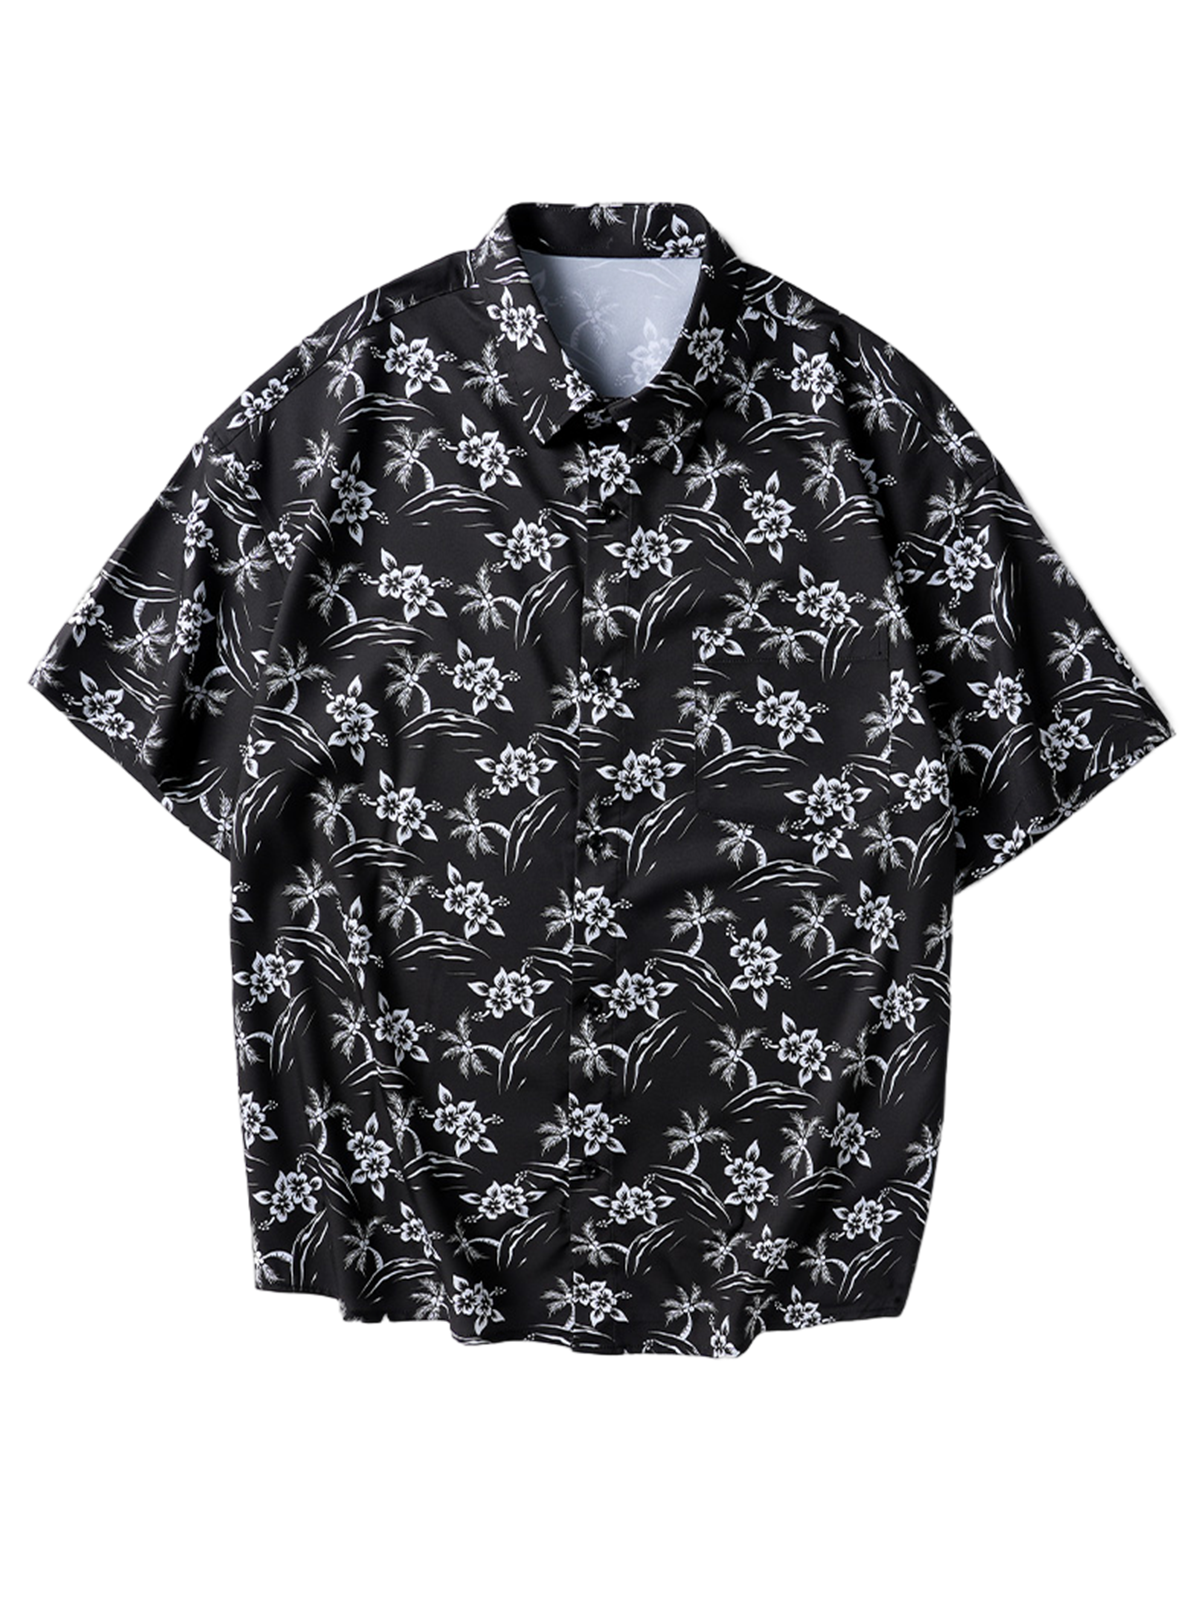 Men's Floral Print Pocket Button Up Hawaiian Summer Short Sleeve Shirt